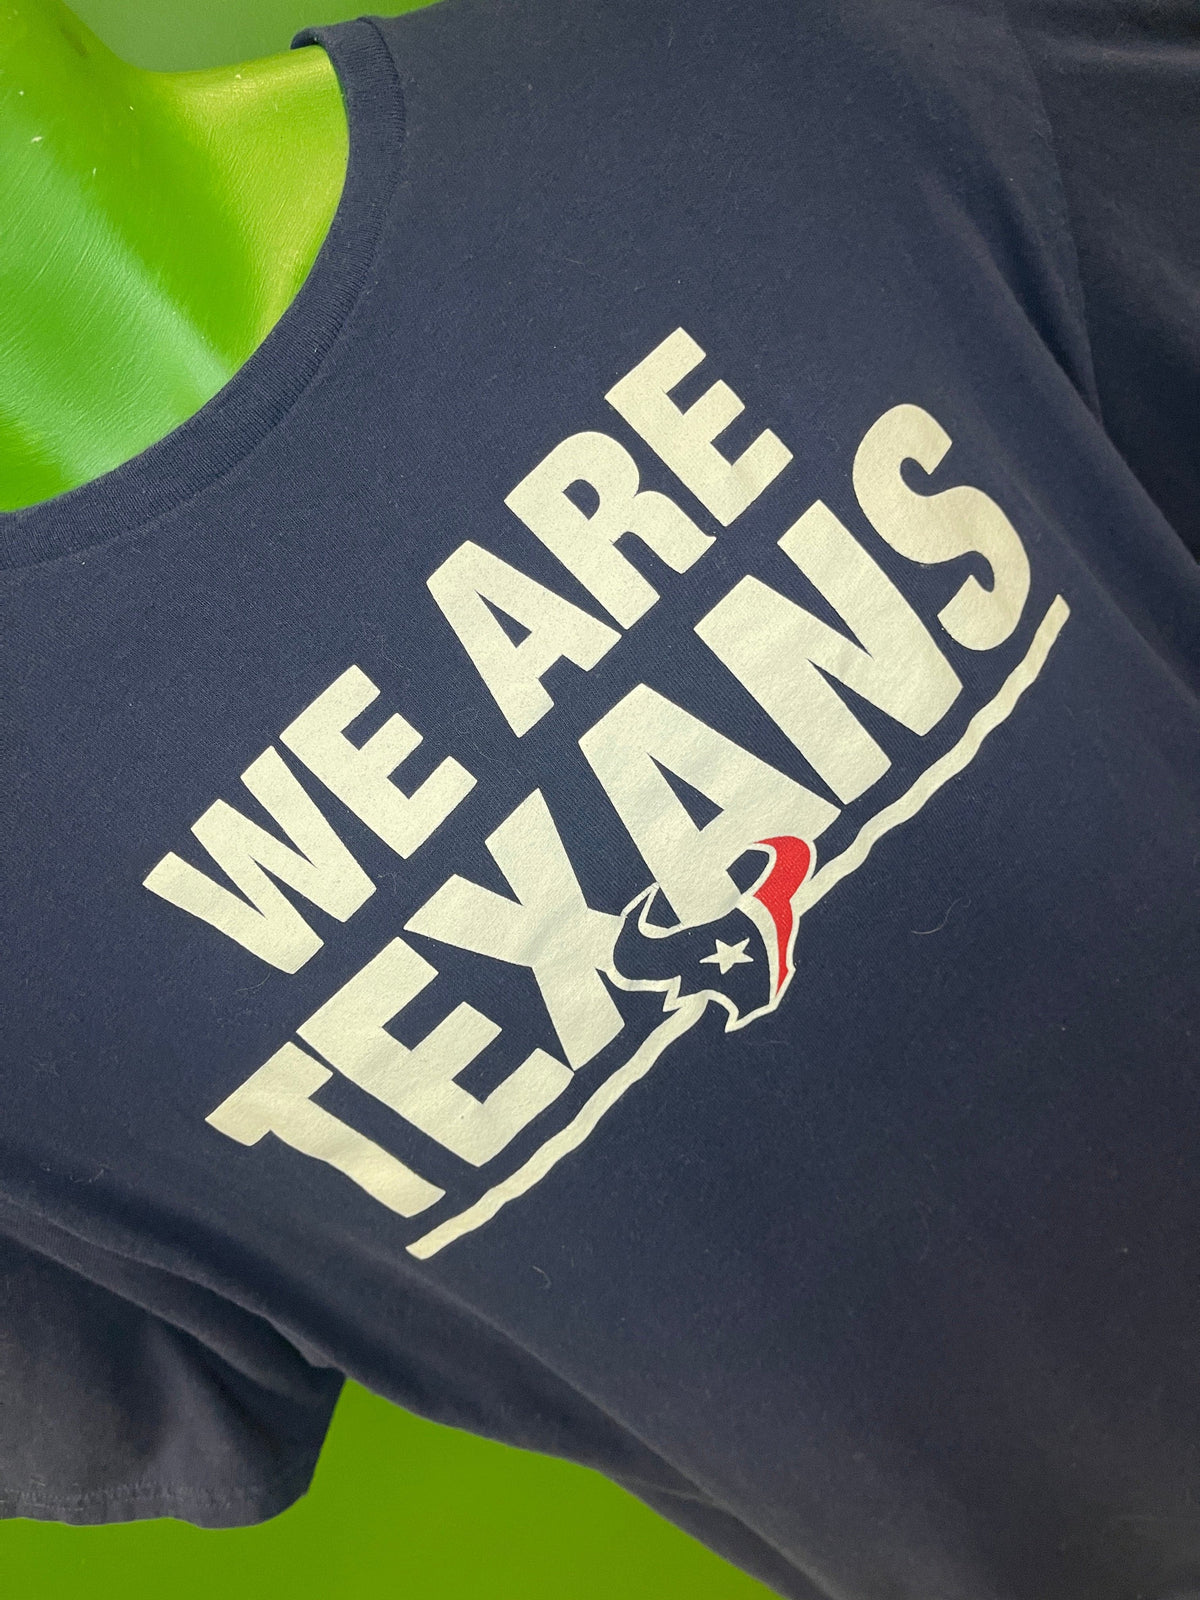 NFL Houston Texans "We are Texans" 100% Cotton T-Shirt Unisex X-Large